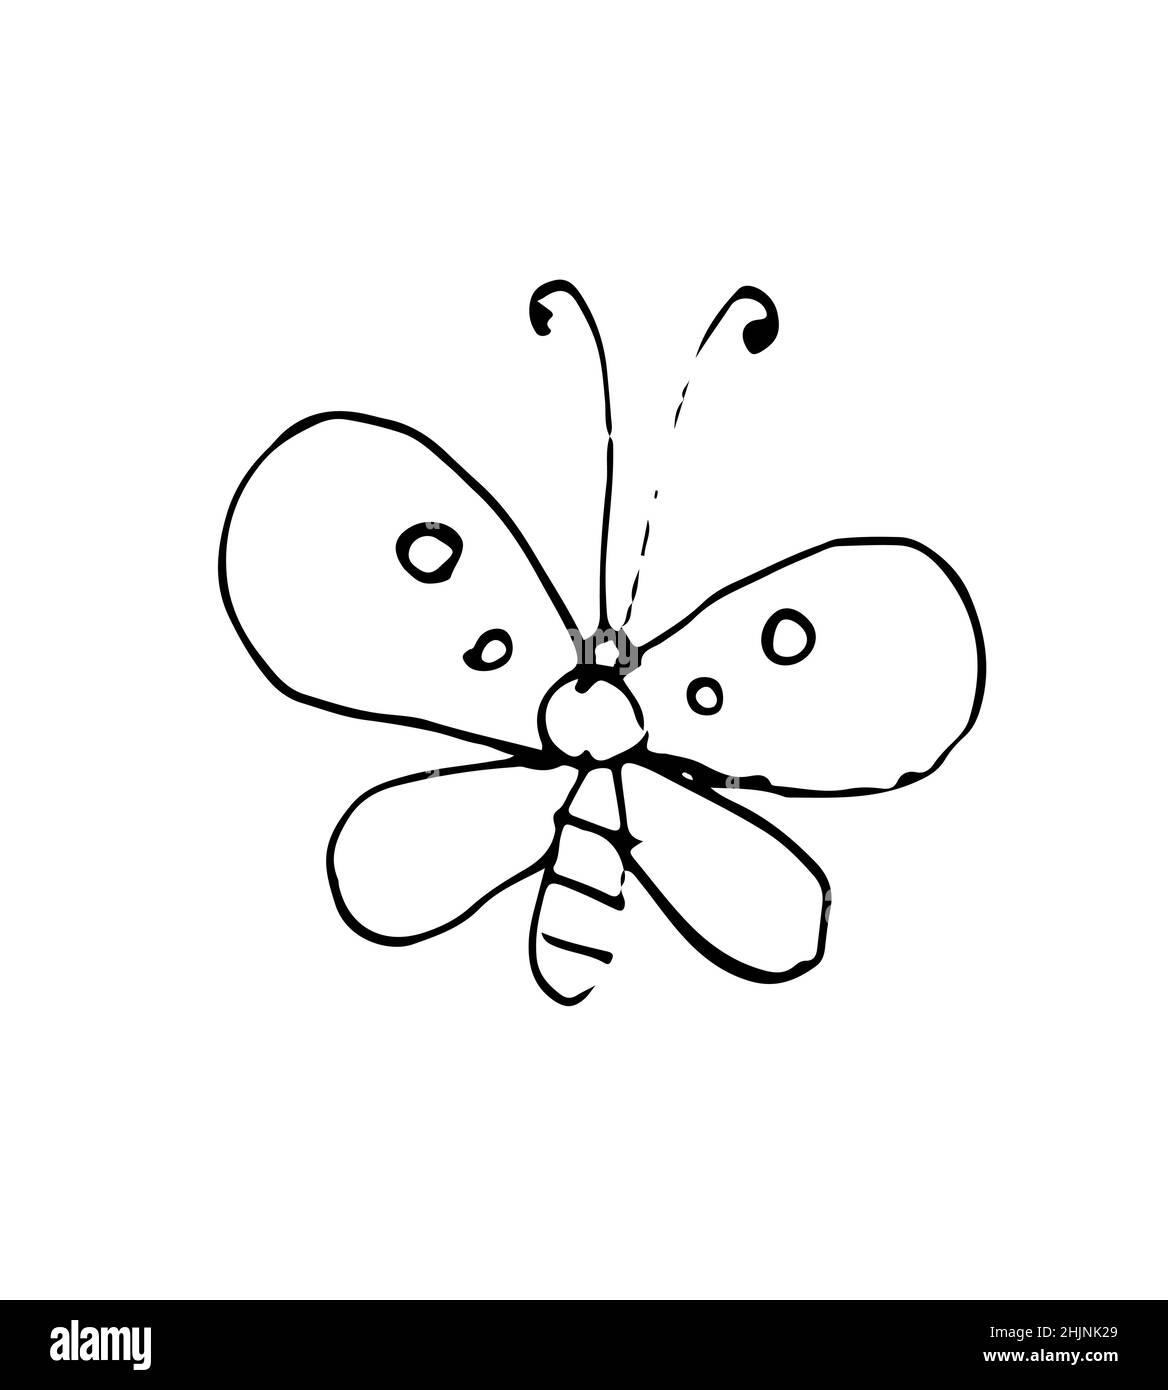 Esquisse de contour de papillon.Insecte comique drôle.Le dessin à la main est isolé sur un fond blanc.Vecteur Illustration de Vecteur